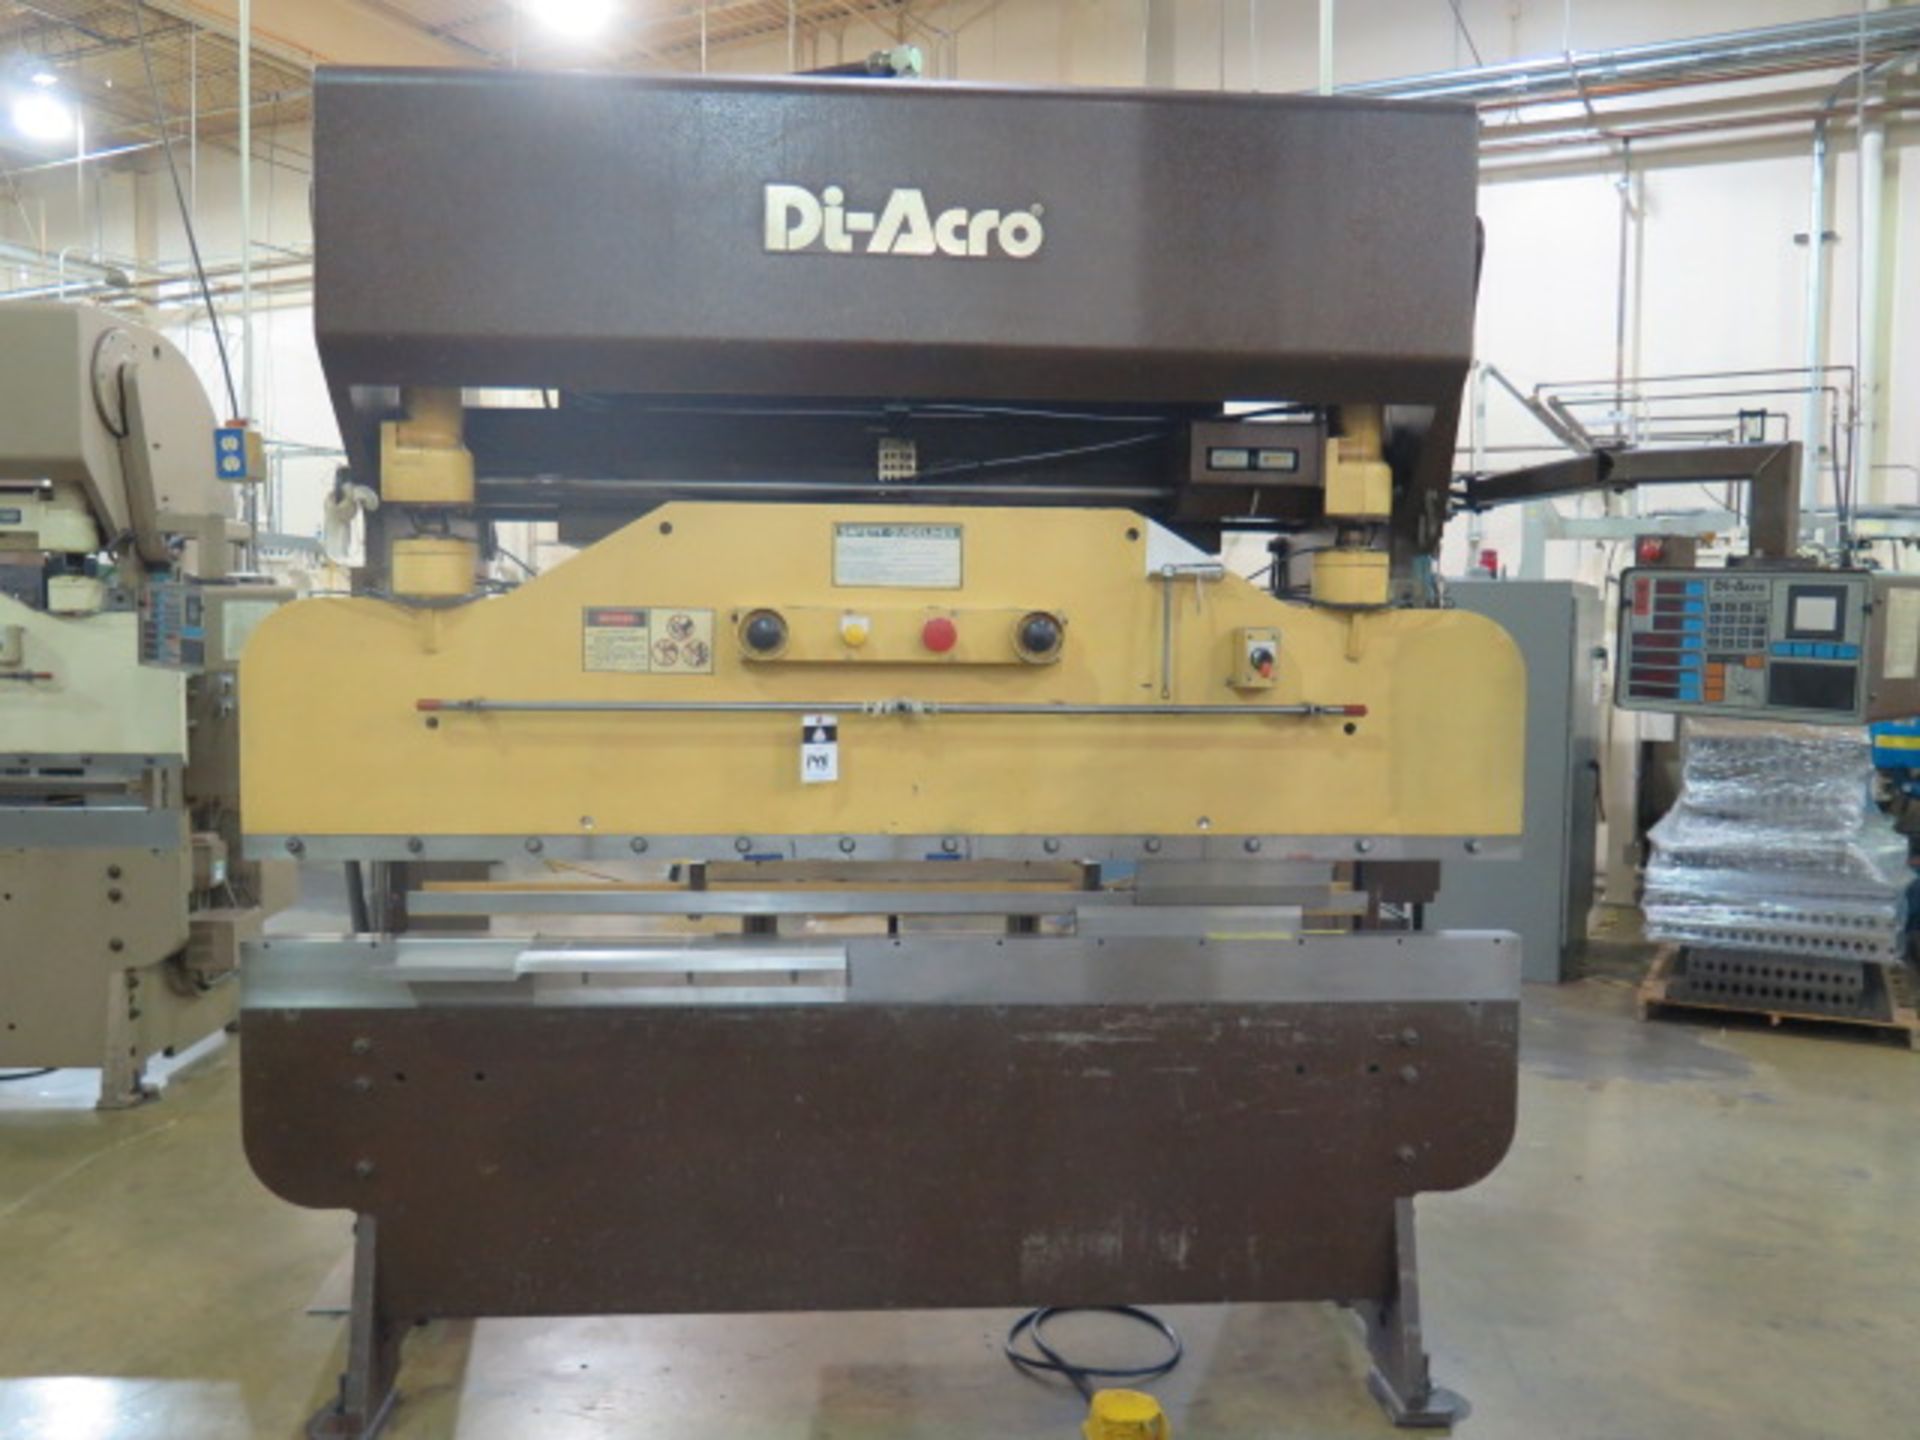 DiAcro 75T8 75 Ton x 8’ Hydrapower CNC Press Brake s/n 0688299 w/ DiAcro Controls, SOLD AS IS